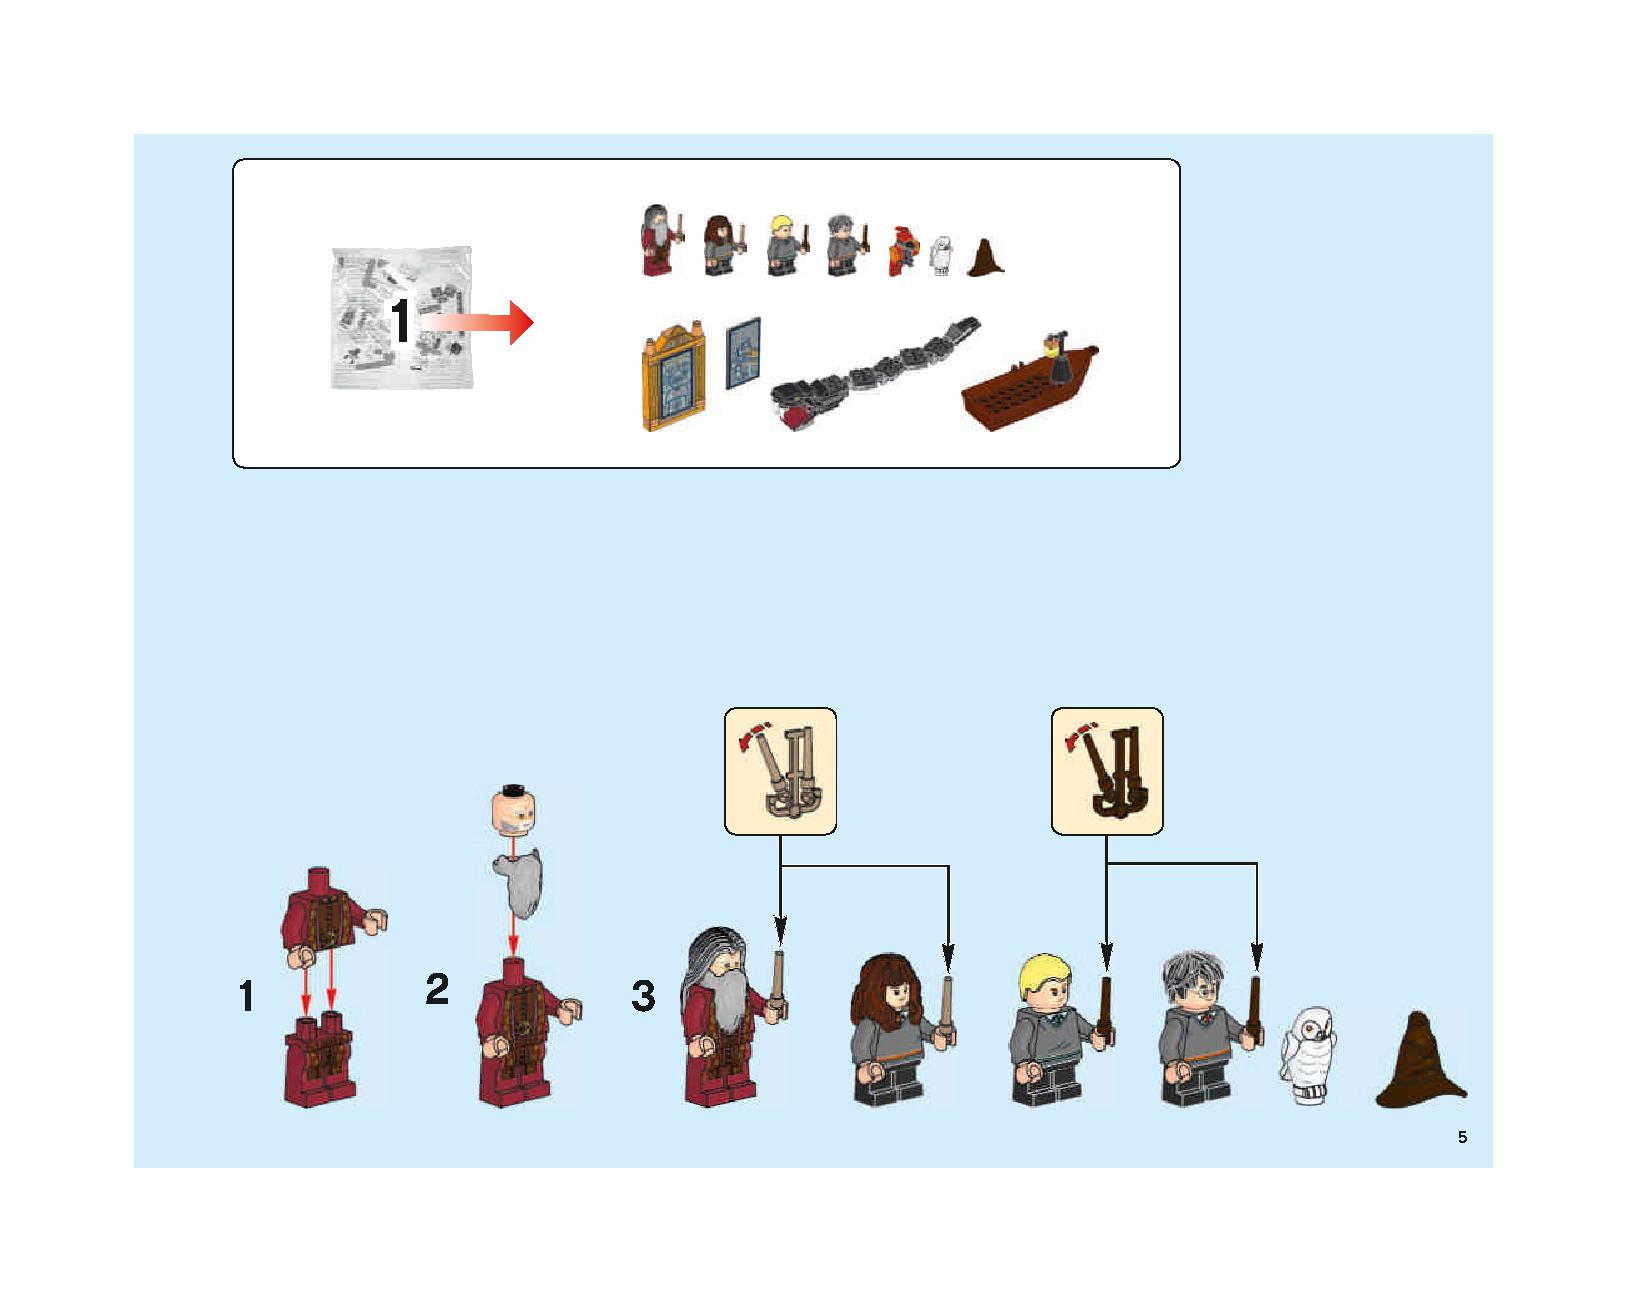 ホグワーツの大広間 75954 レゴの商品情報 レゴの説明書・組立方法 5 page